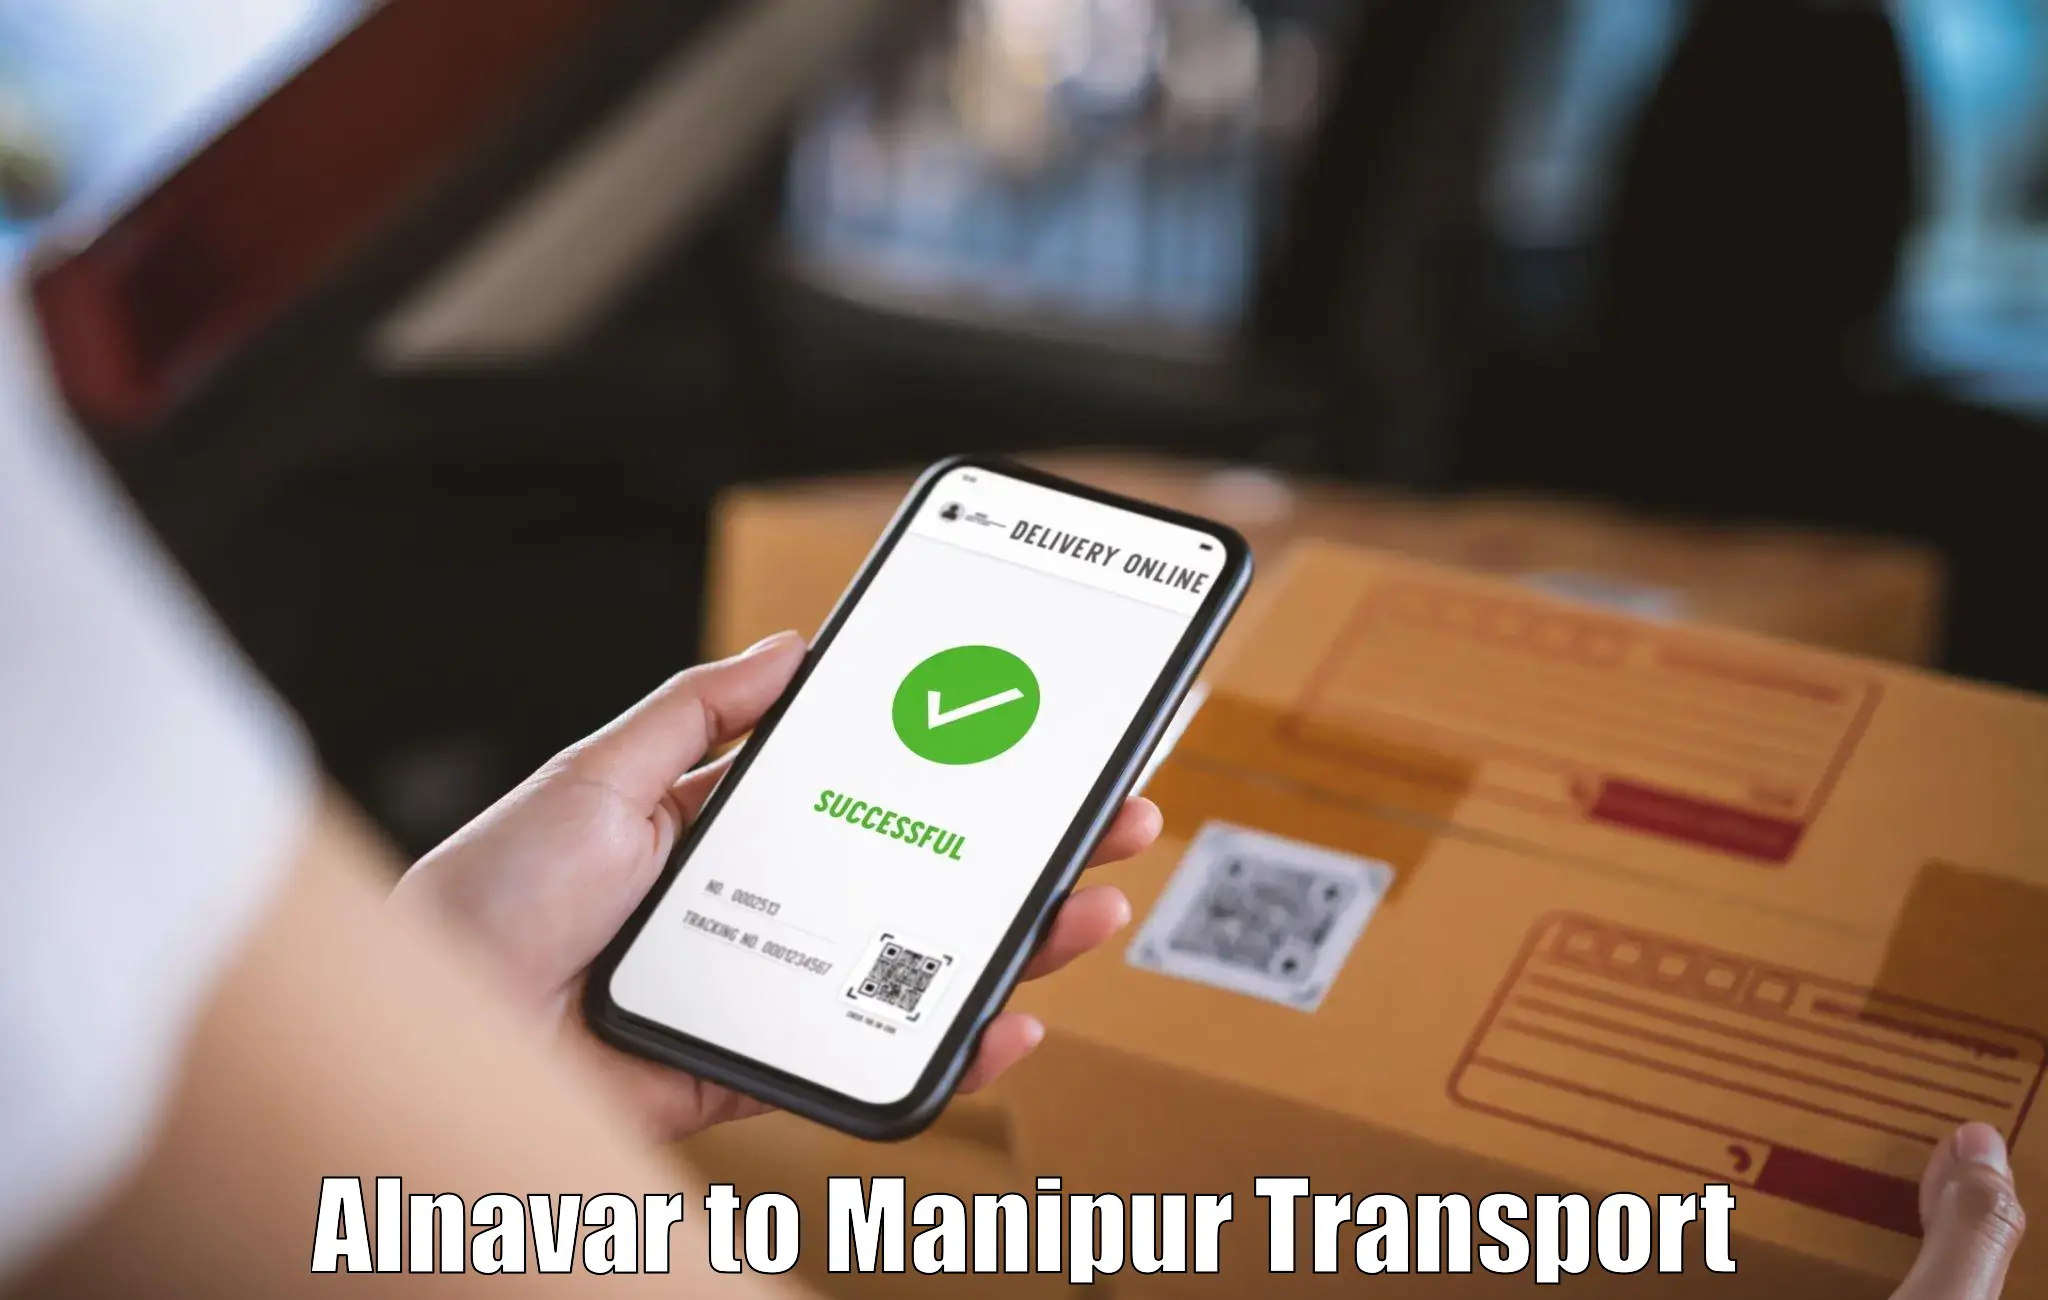 Furniture transport service Alnavar to Imphal